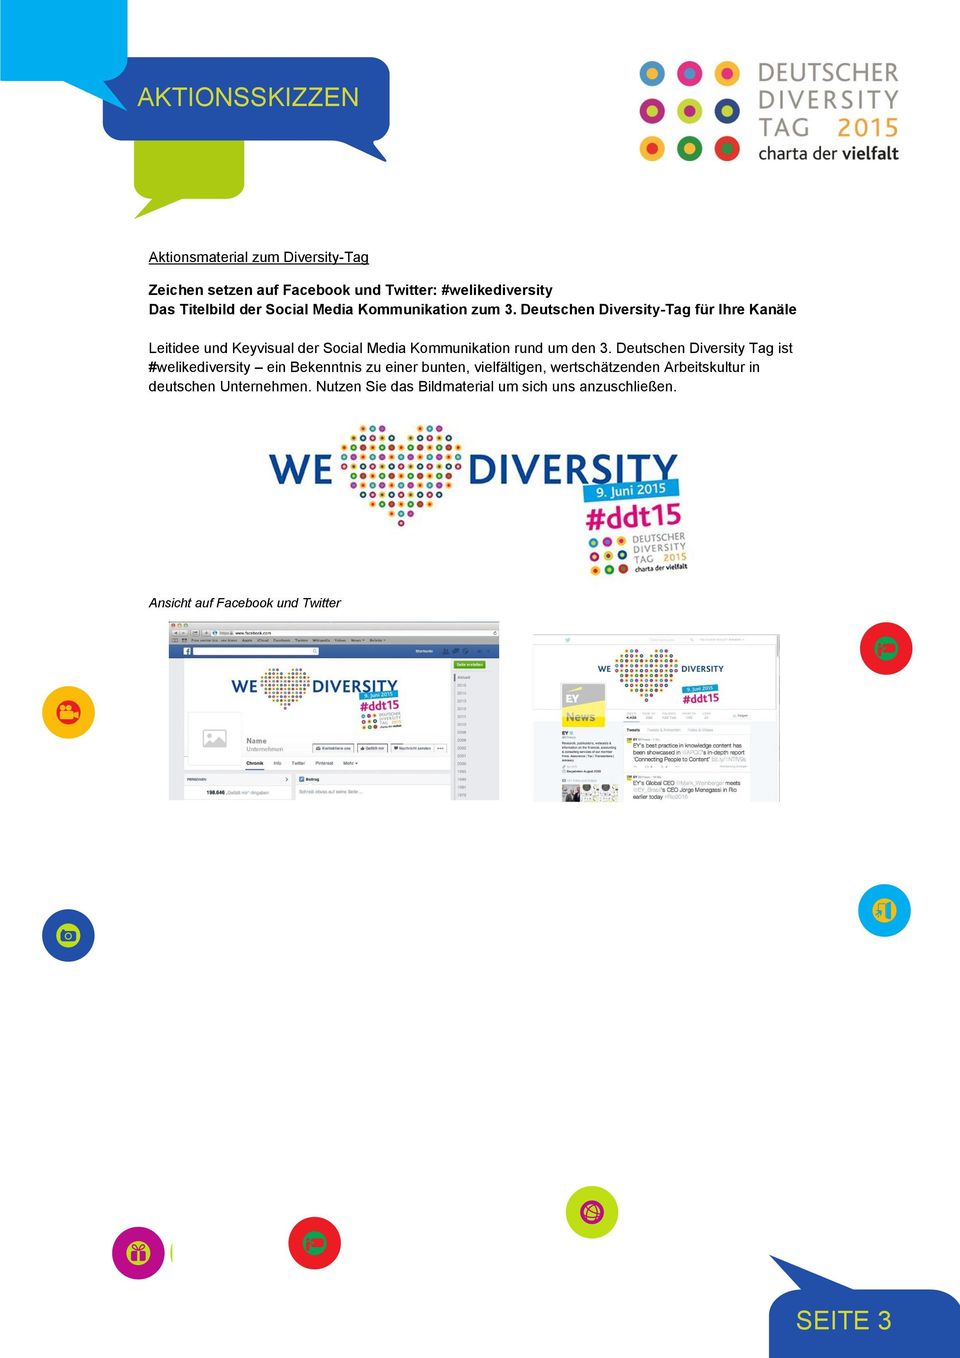 Deutschen Diversity-Tag für Ihre Kanäle Leitidee und Keyvisual der Social Media Kommunikation rund um den 3.